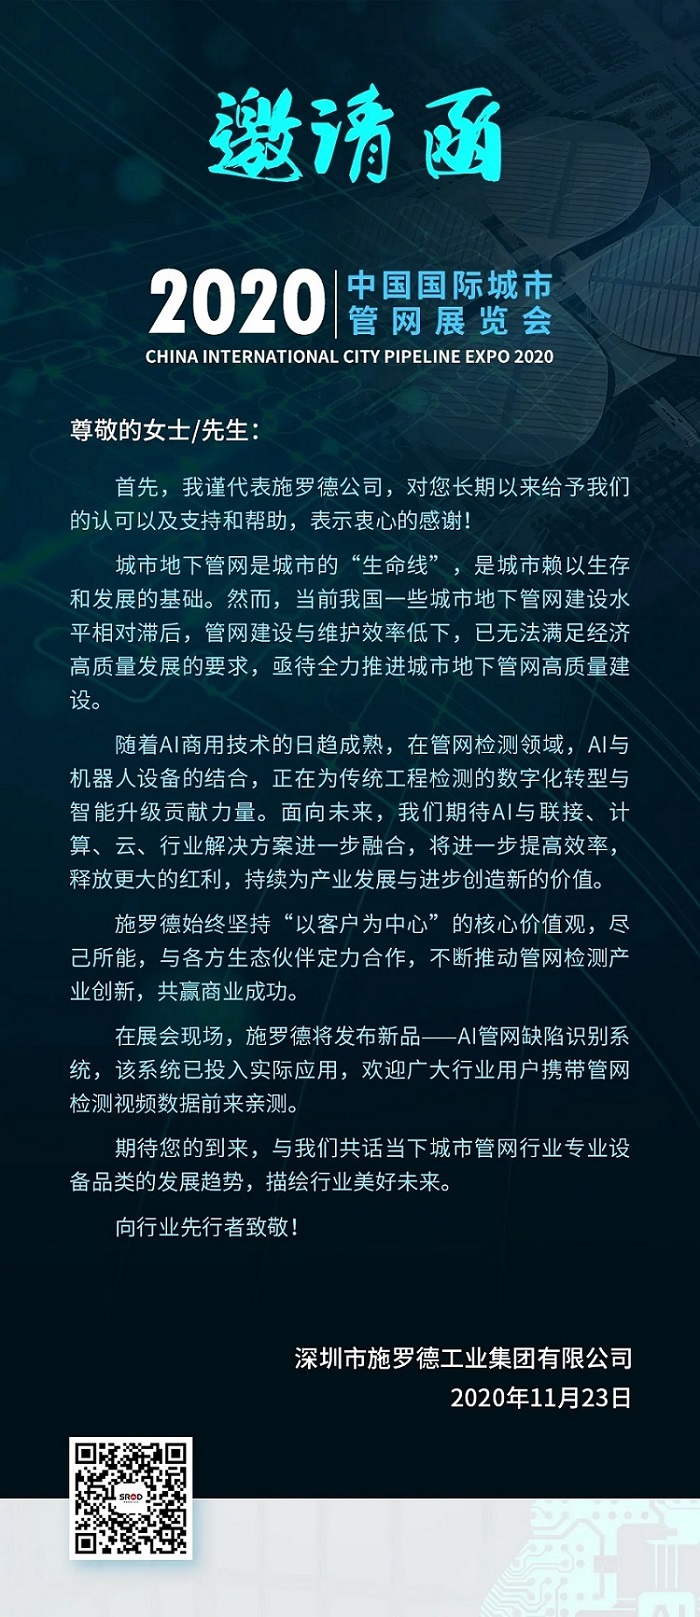 【展会邀请】中国最大城市管网展览会，我们在上海与你相约！